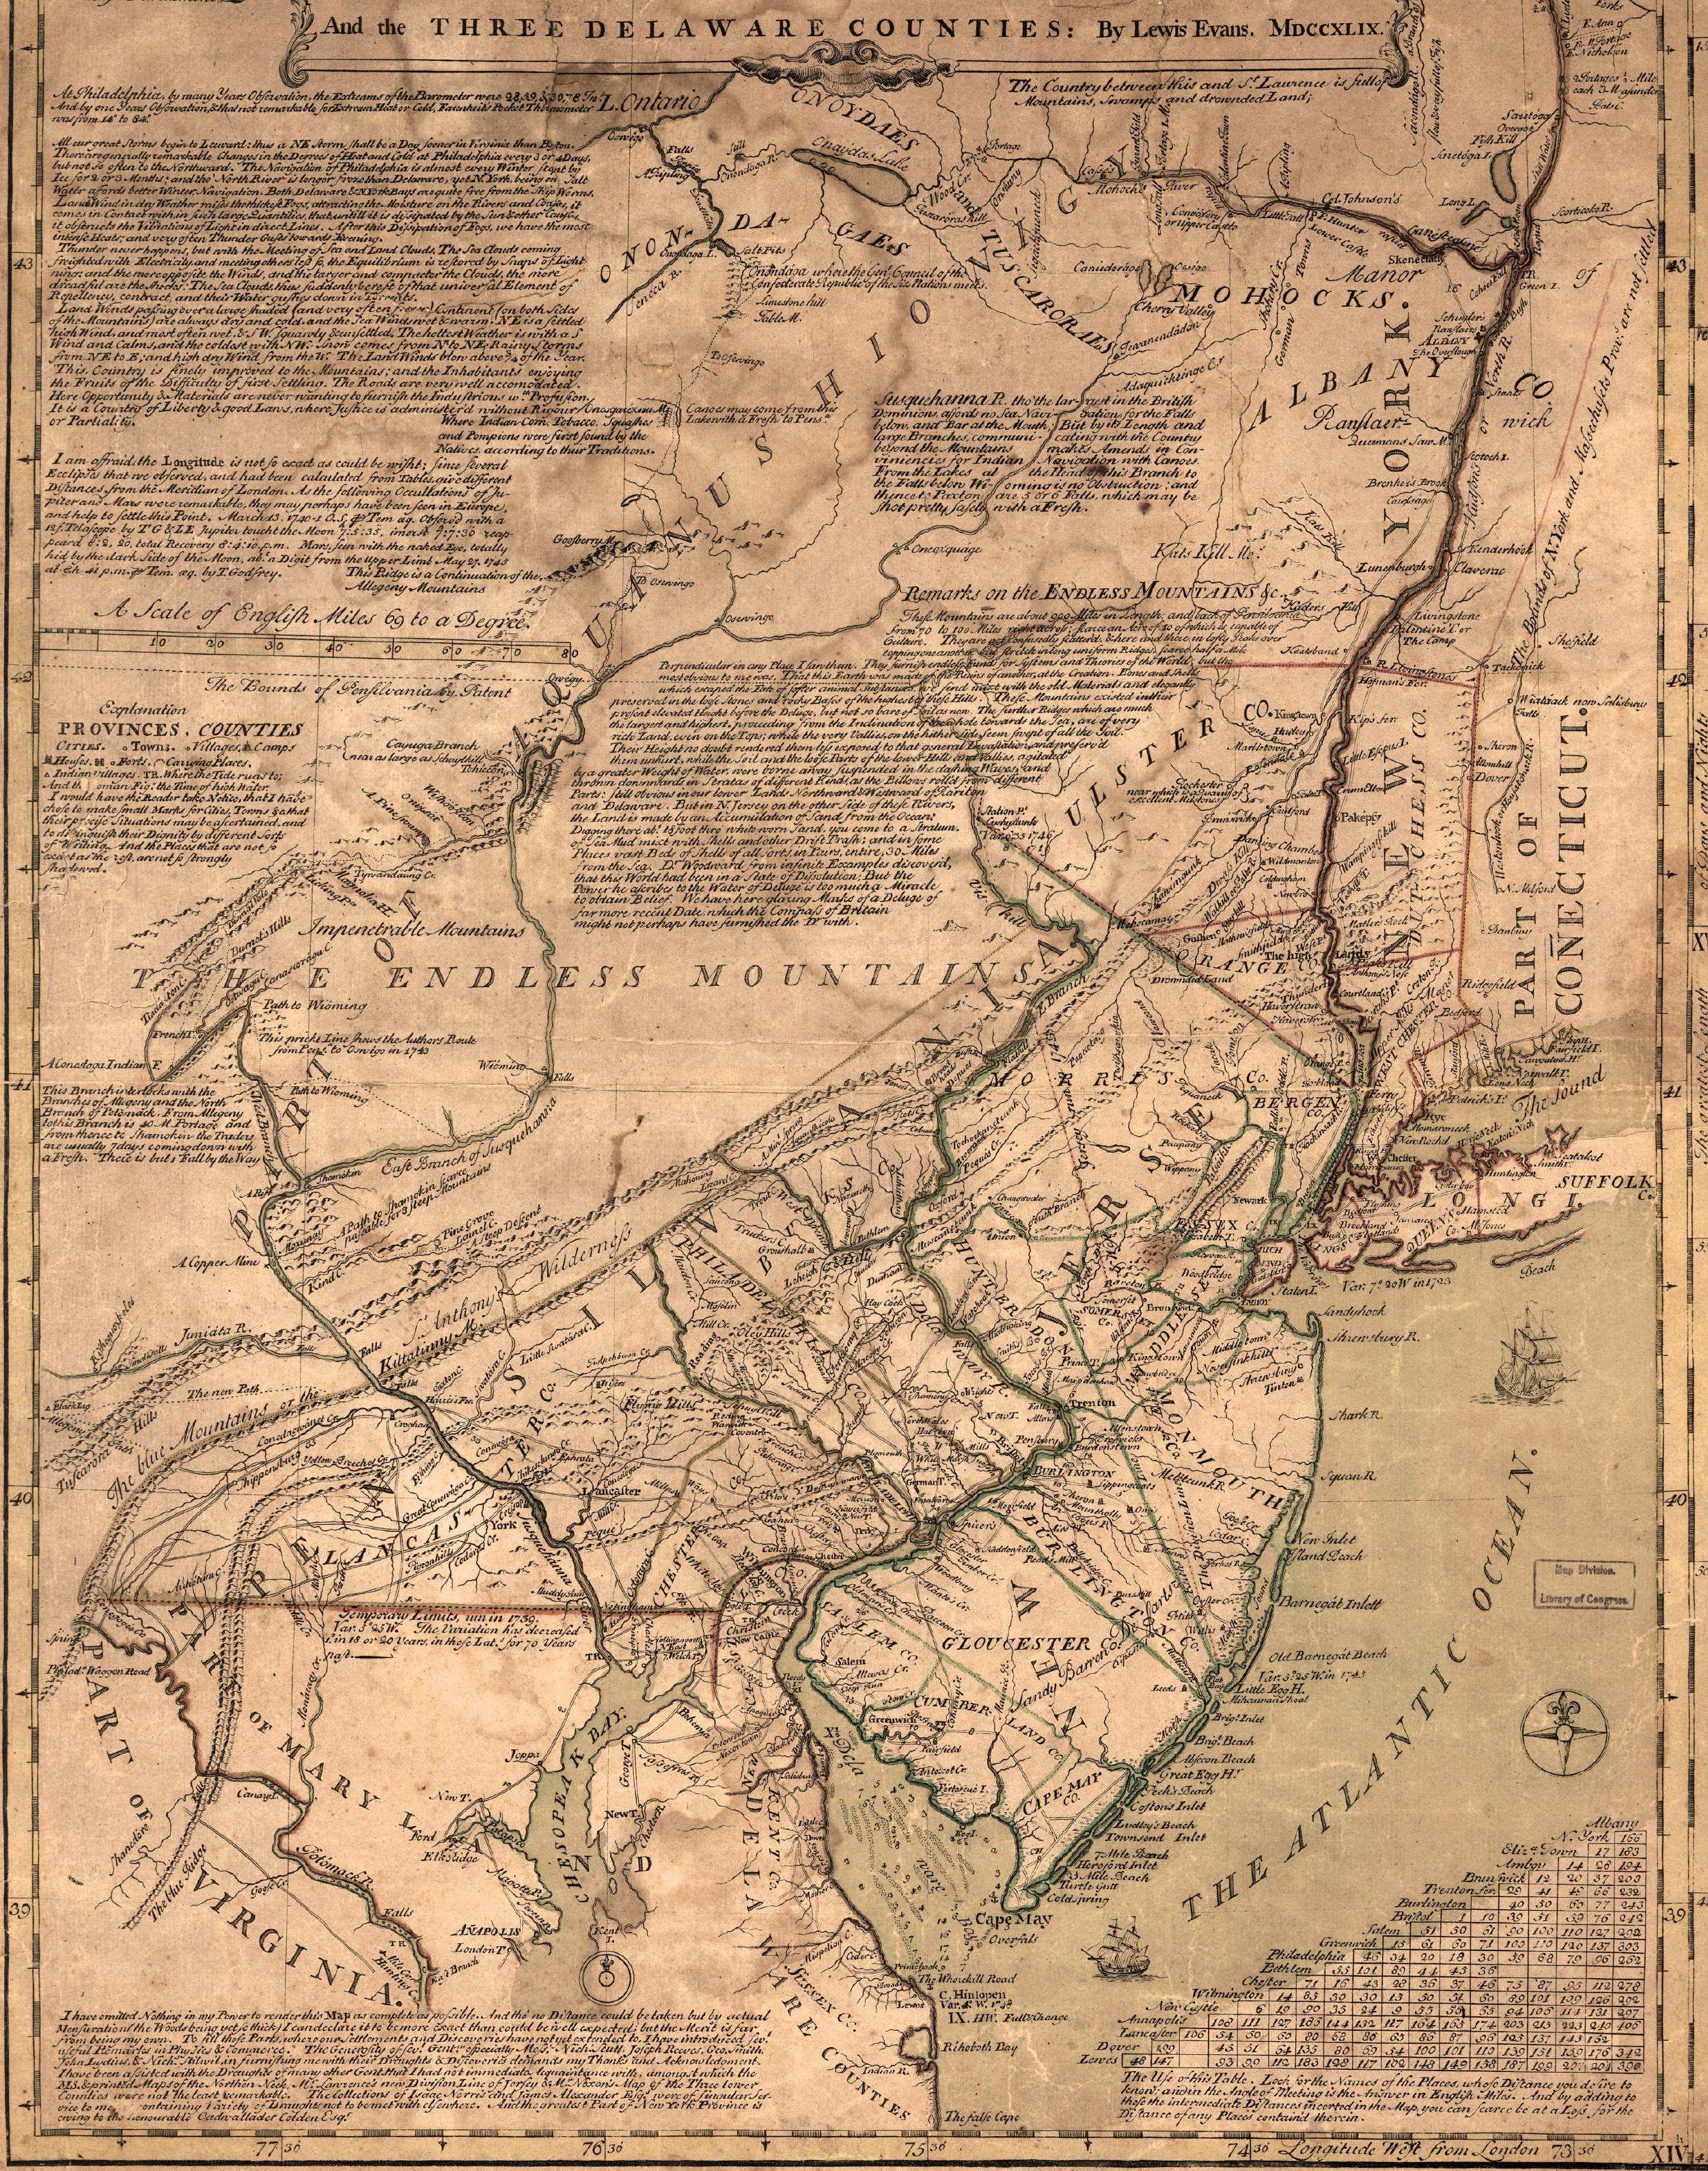 1749 Lewis Evans Map